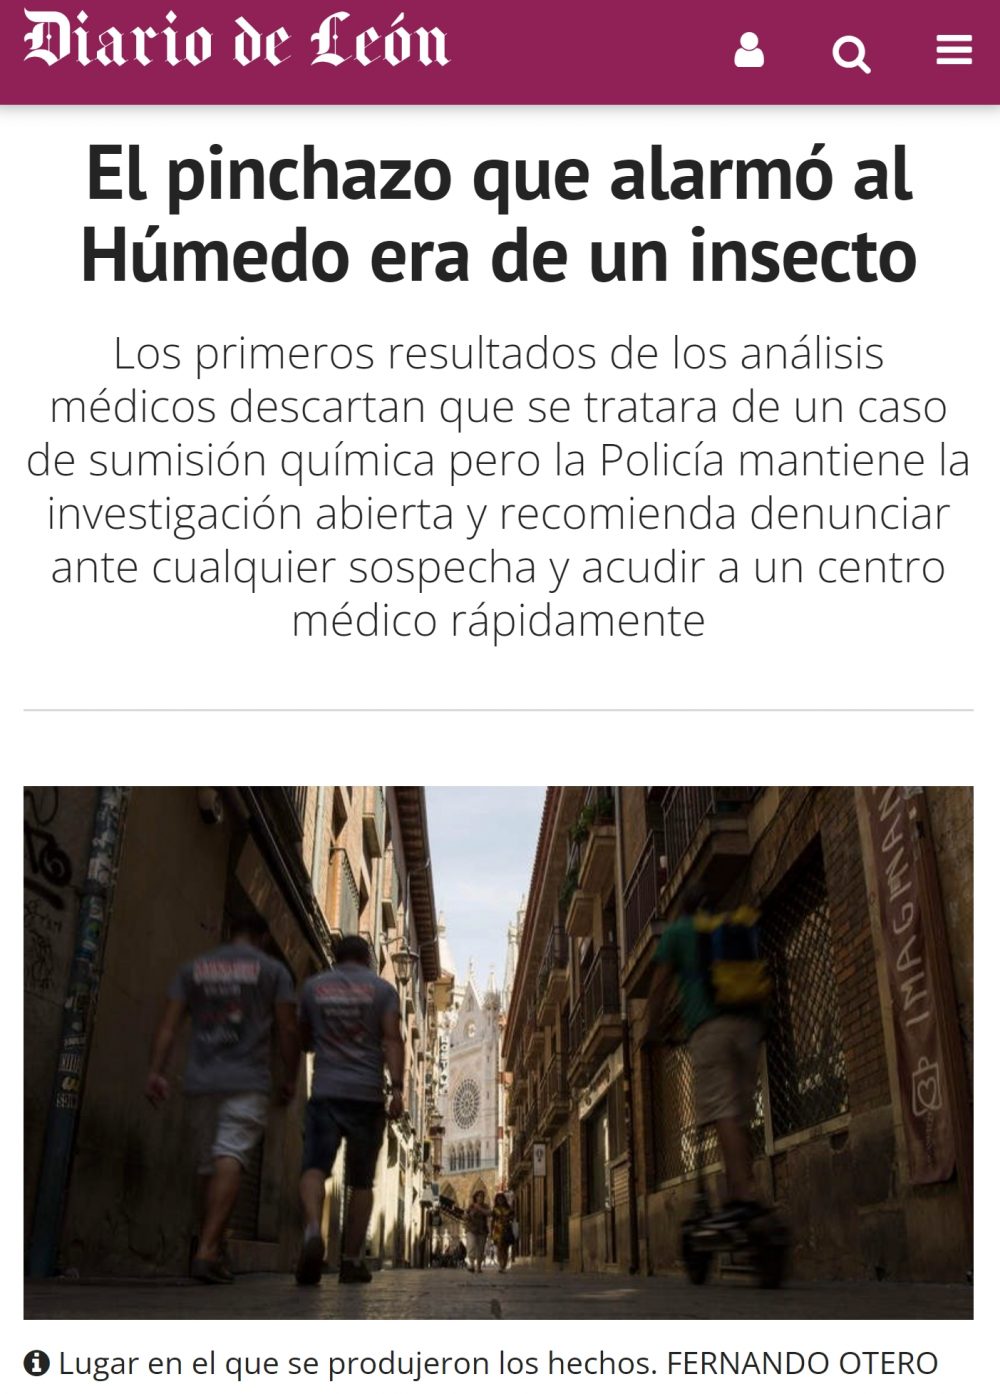 La joven que denunció un pinchazo en el Húmedo fue atacada por un insecto